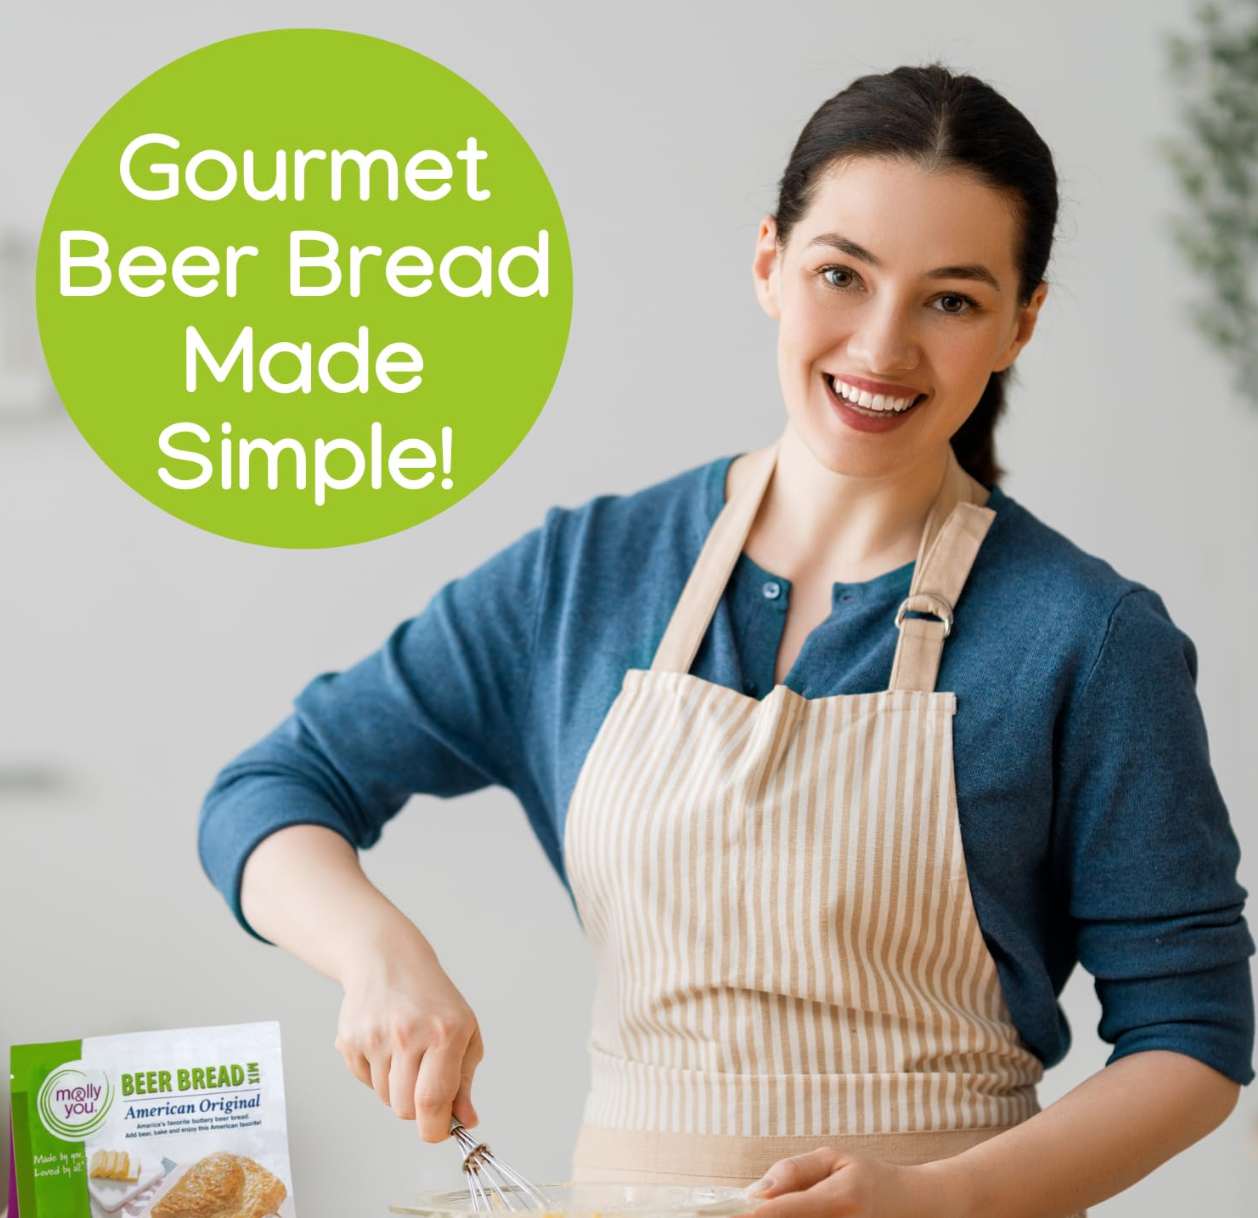 Gourmet Beer Bread made simple